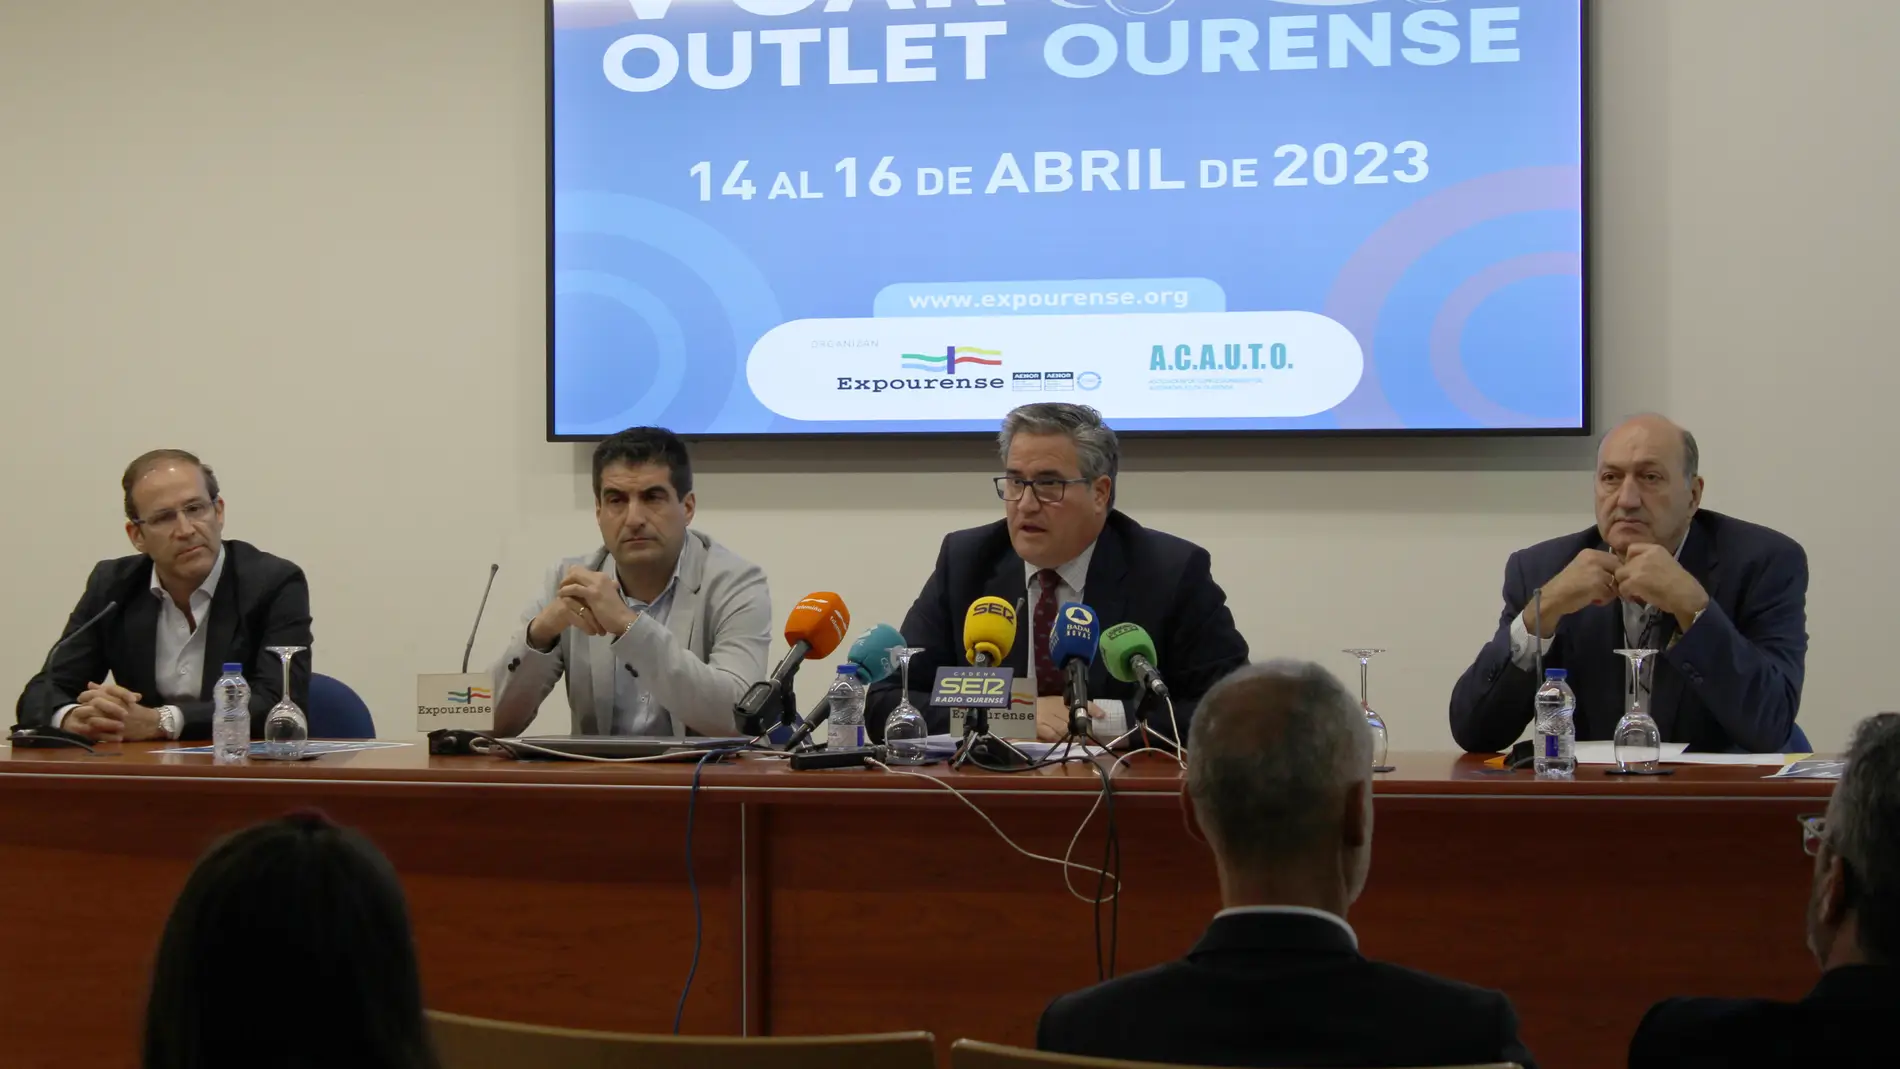 Expourense acolle o 5º Car Outlet Ourense entre o 14 e o 16 de abril